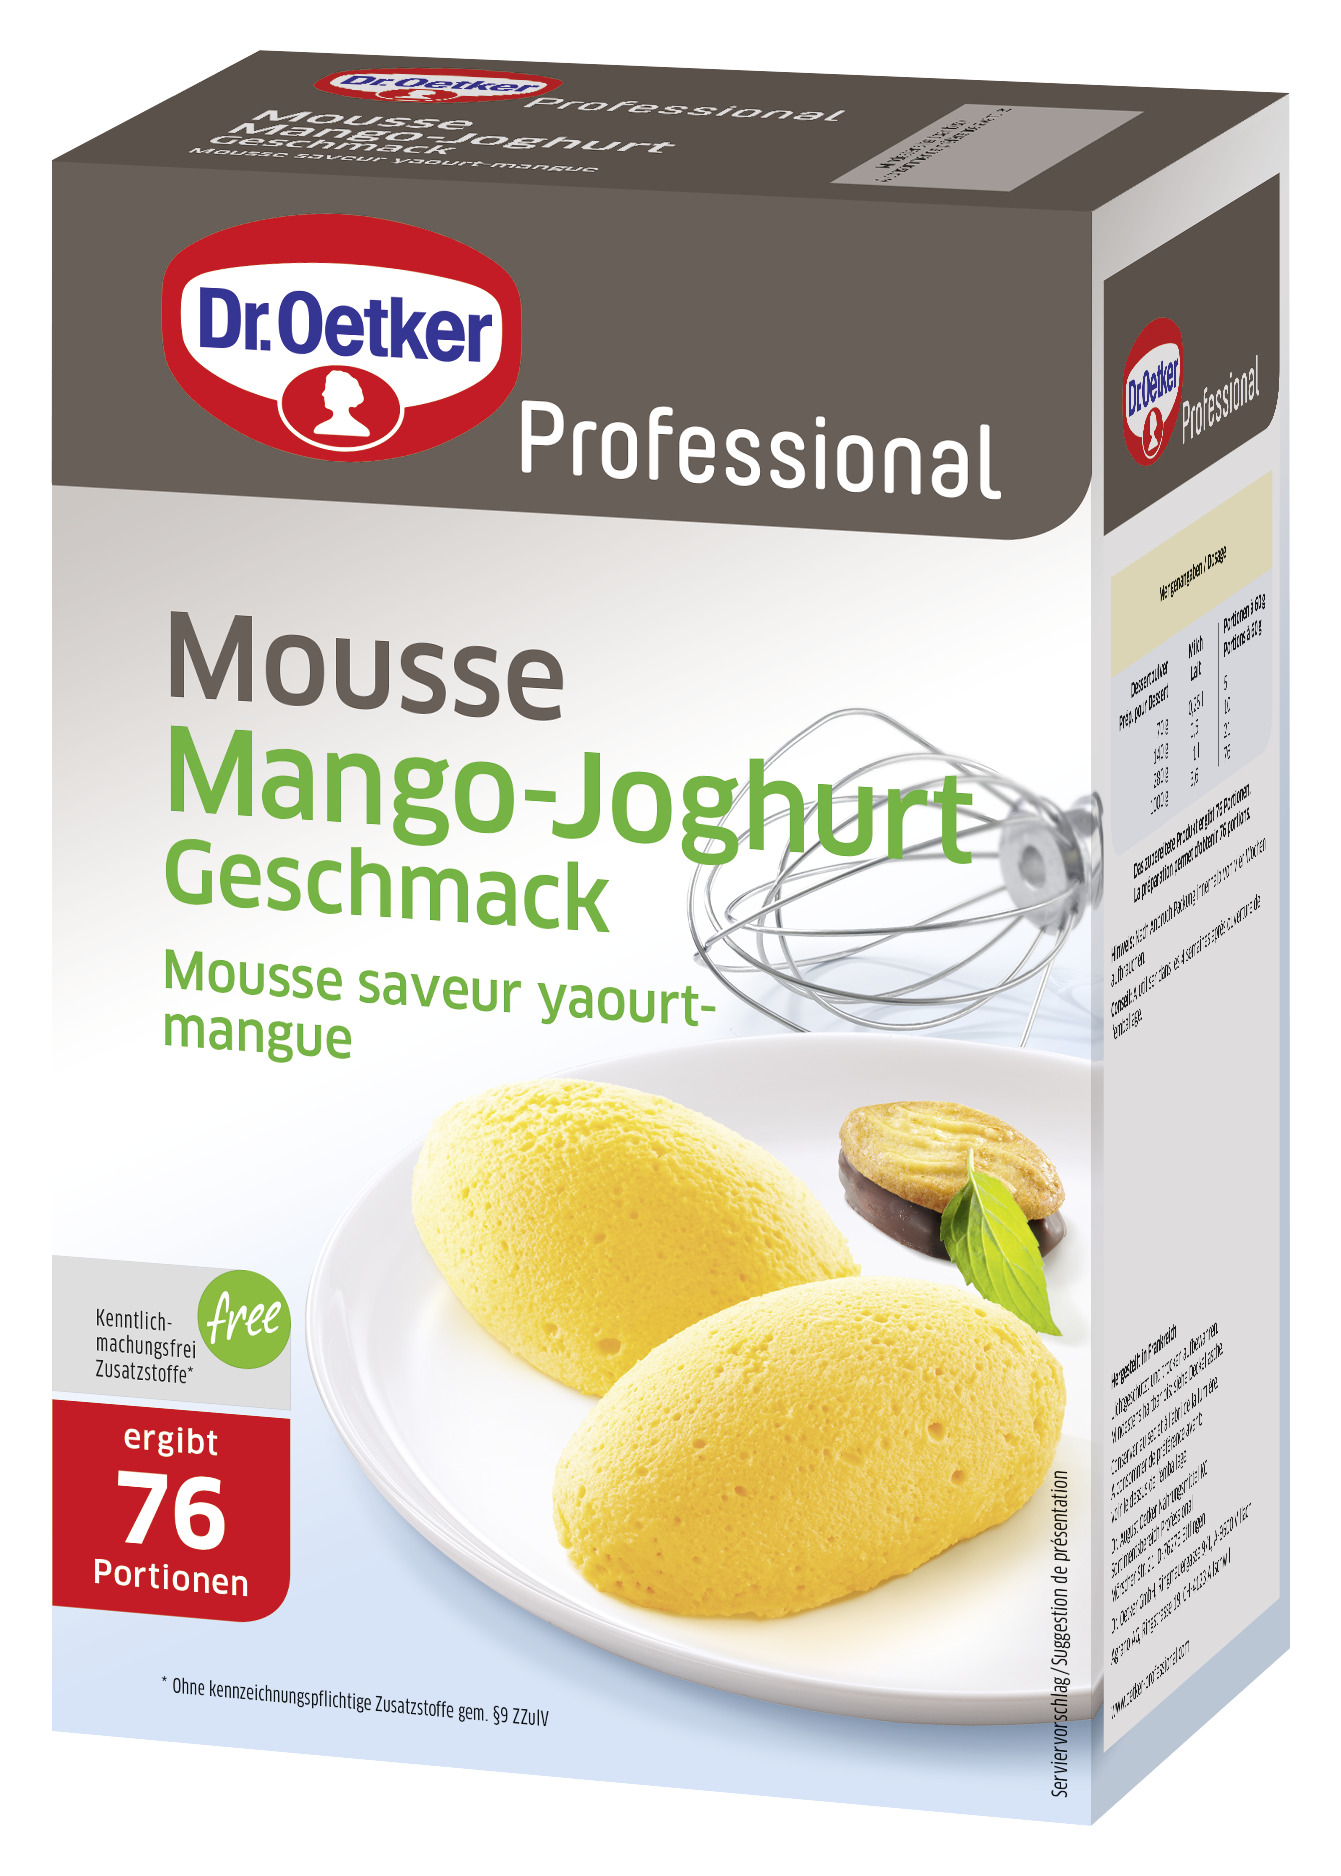 Mousse Mango-Joghurt Geschmack 1000g